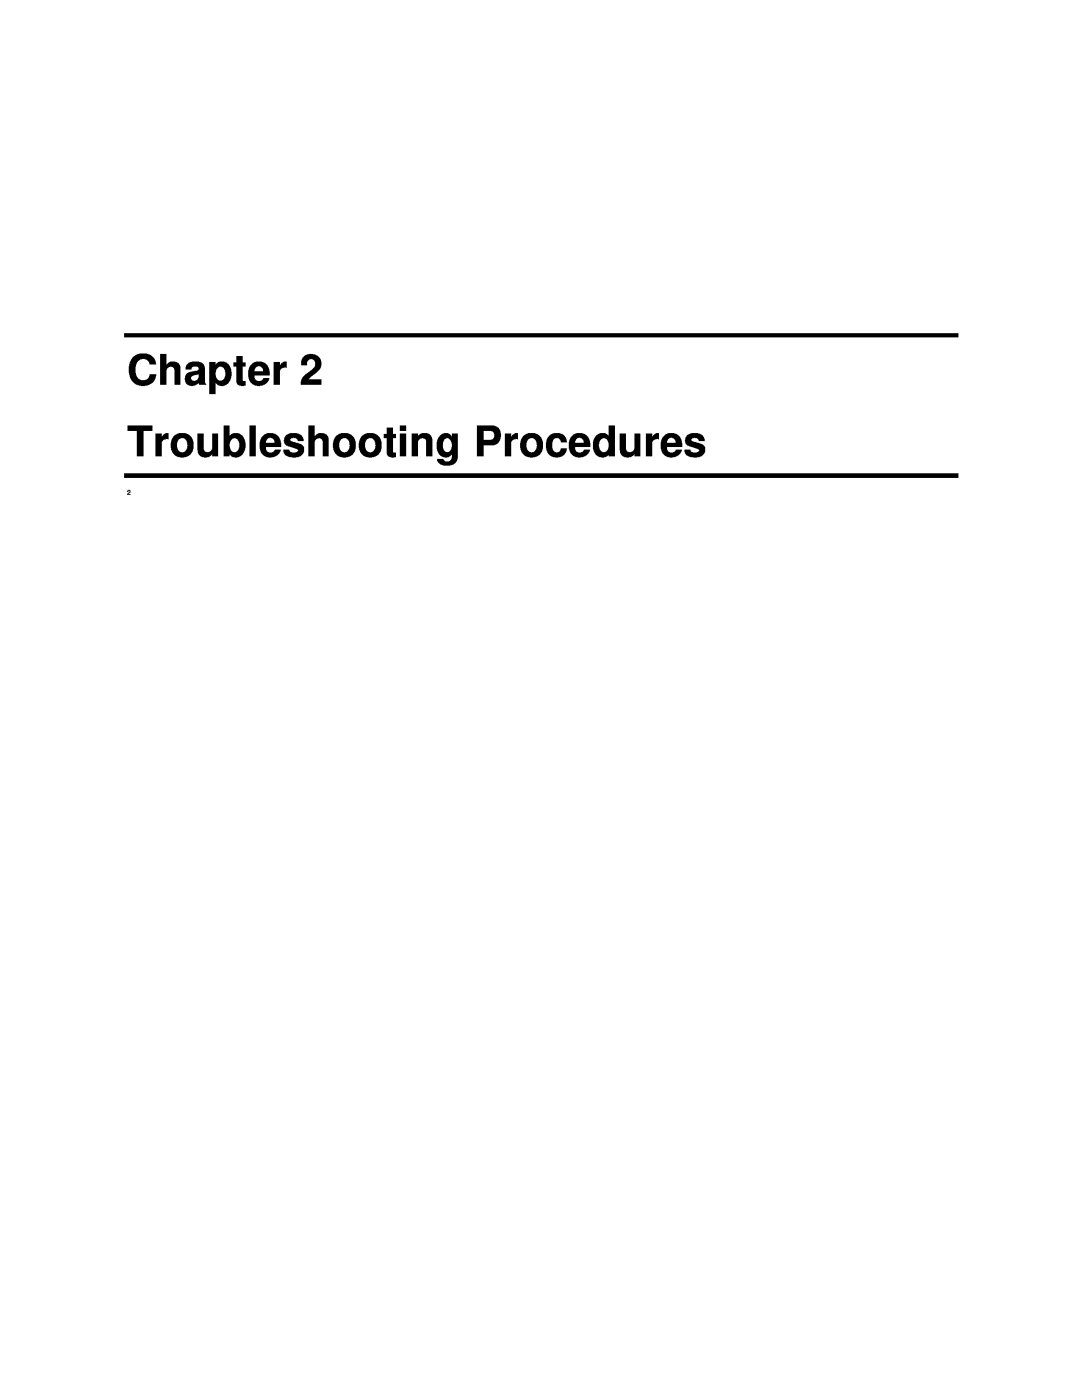 Toshiba S2 manual Chapter Troubleshooting Procedures 